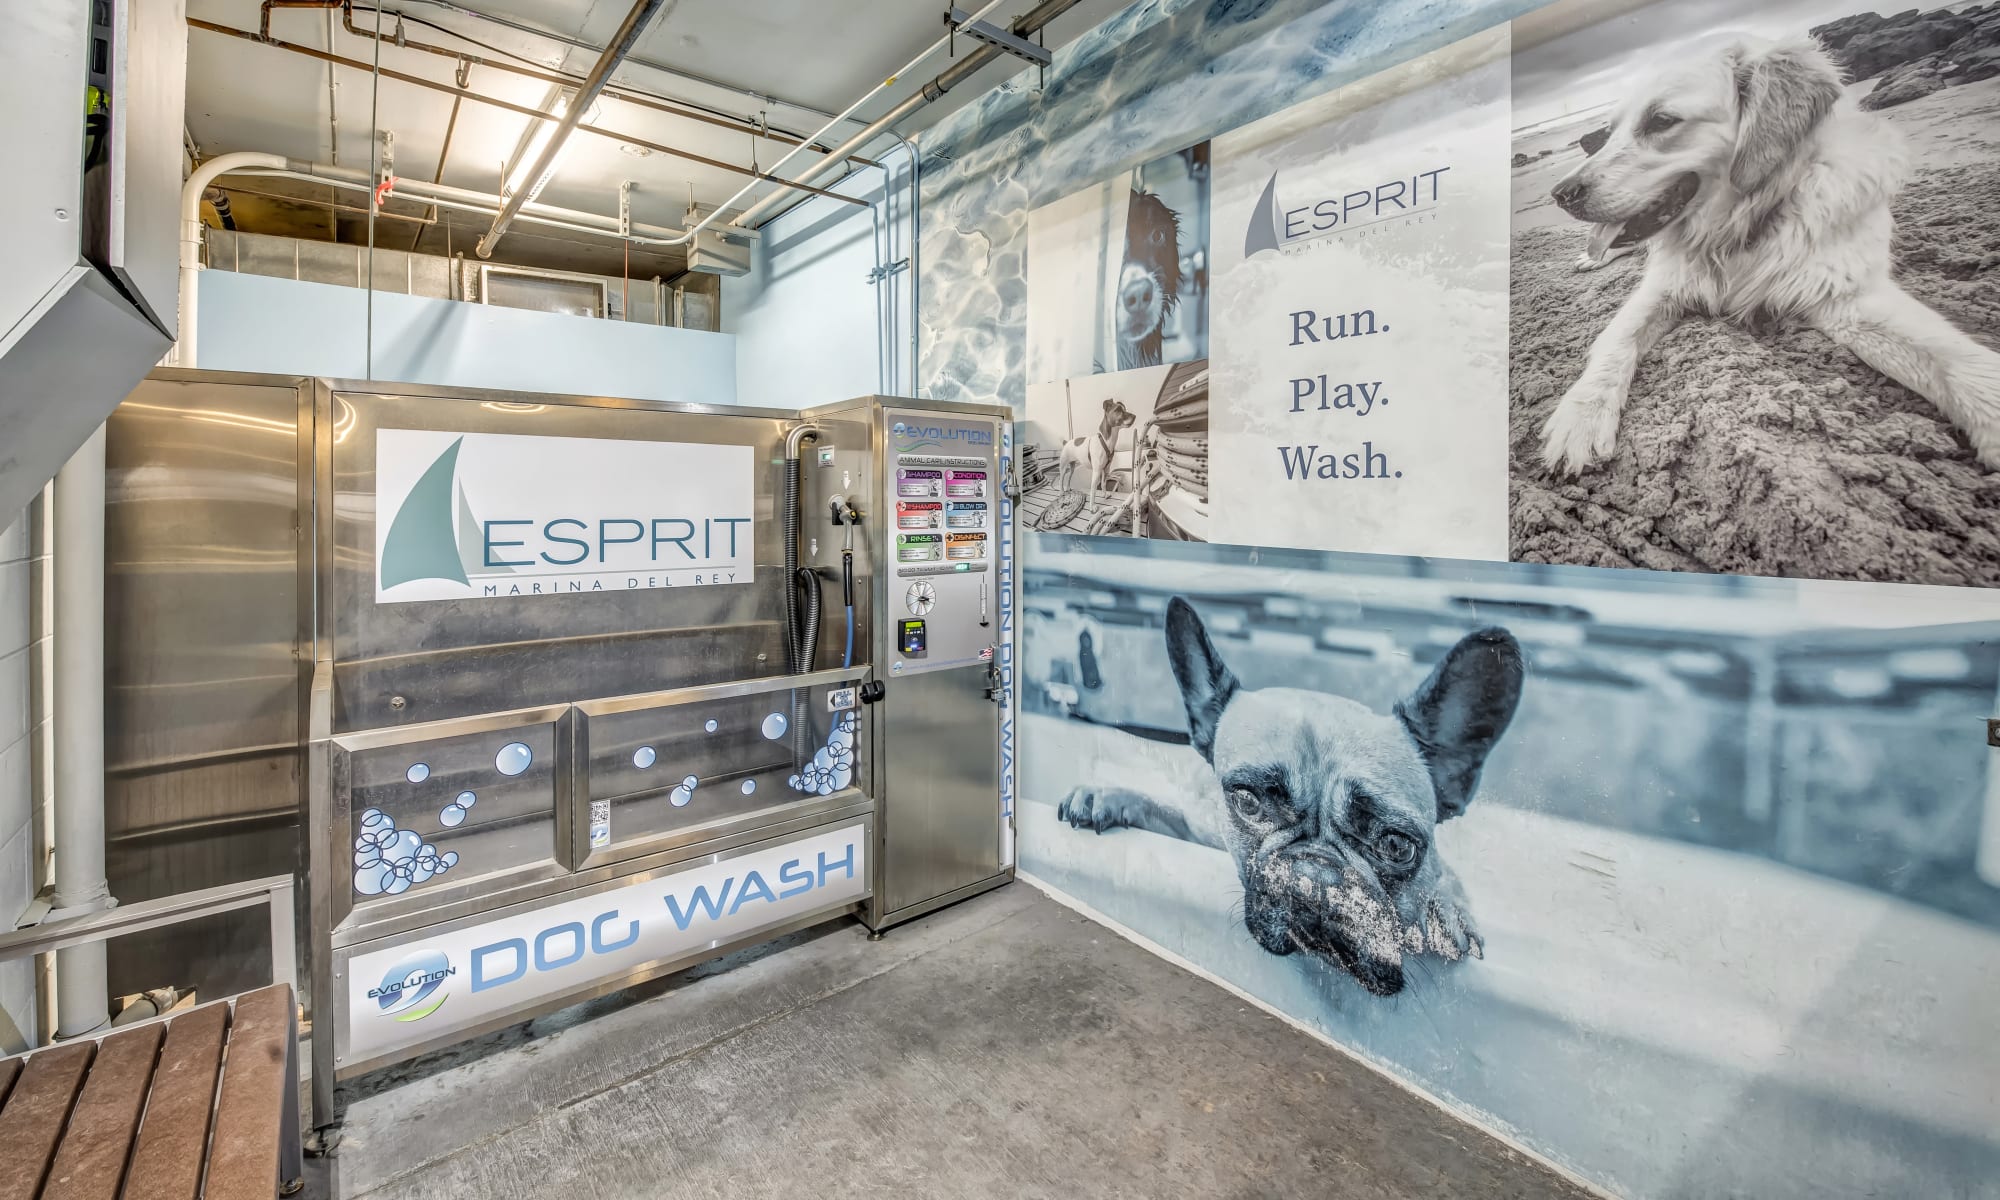 Dog washing station at Esprit Marina del Rey in Marina del Rey, California